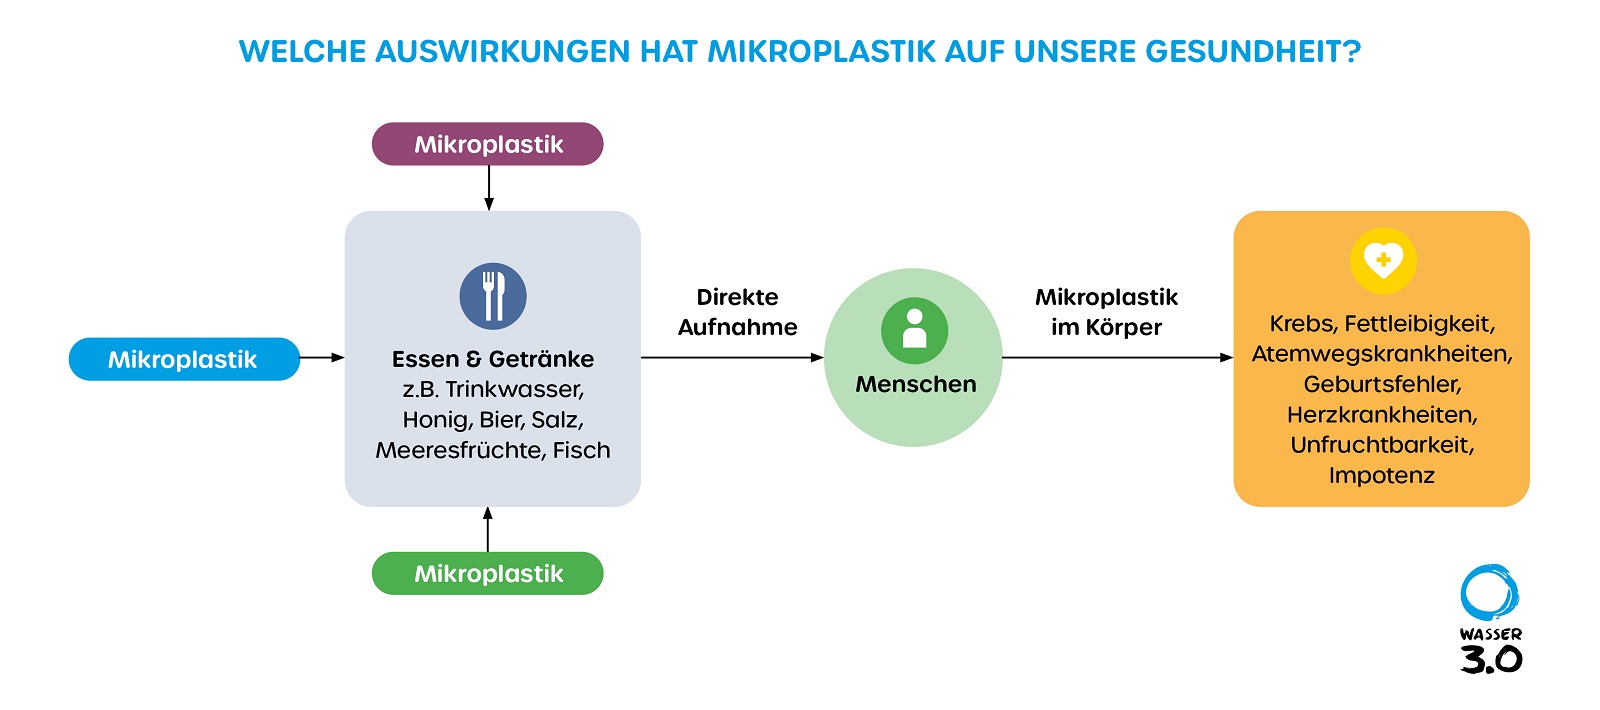 Welche Auswirkungen hat Mikroplastik auf die Gesundheit?